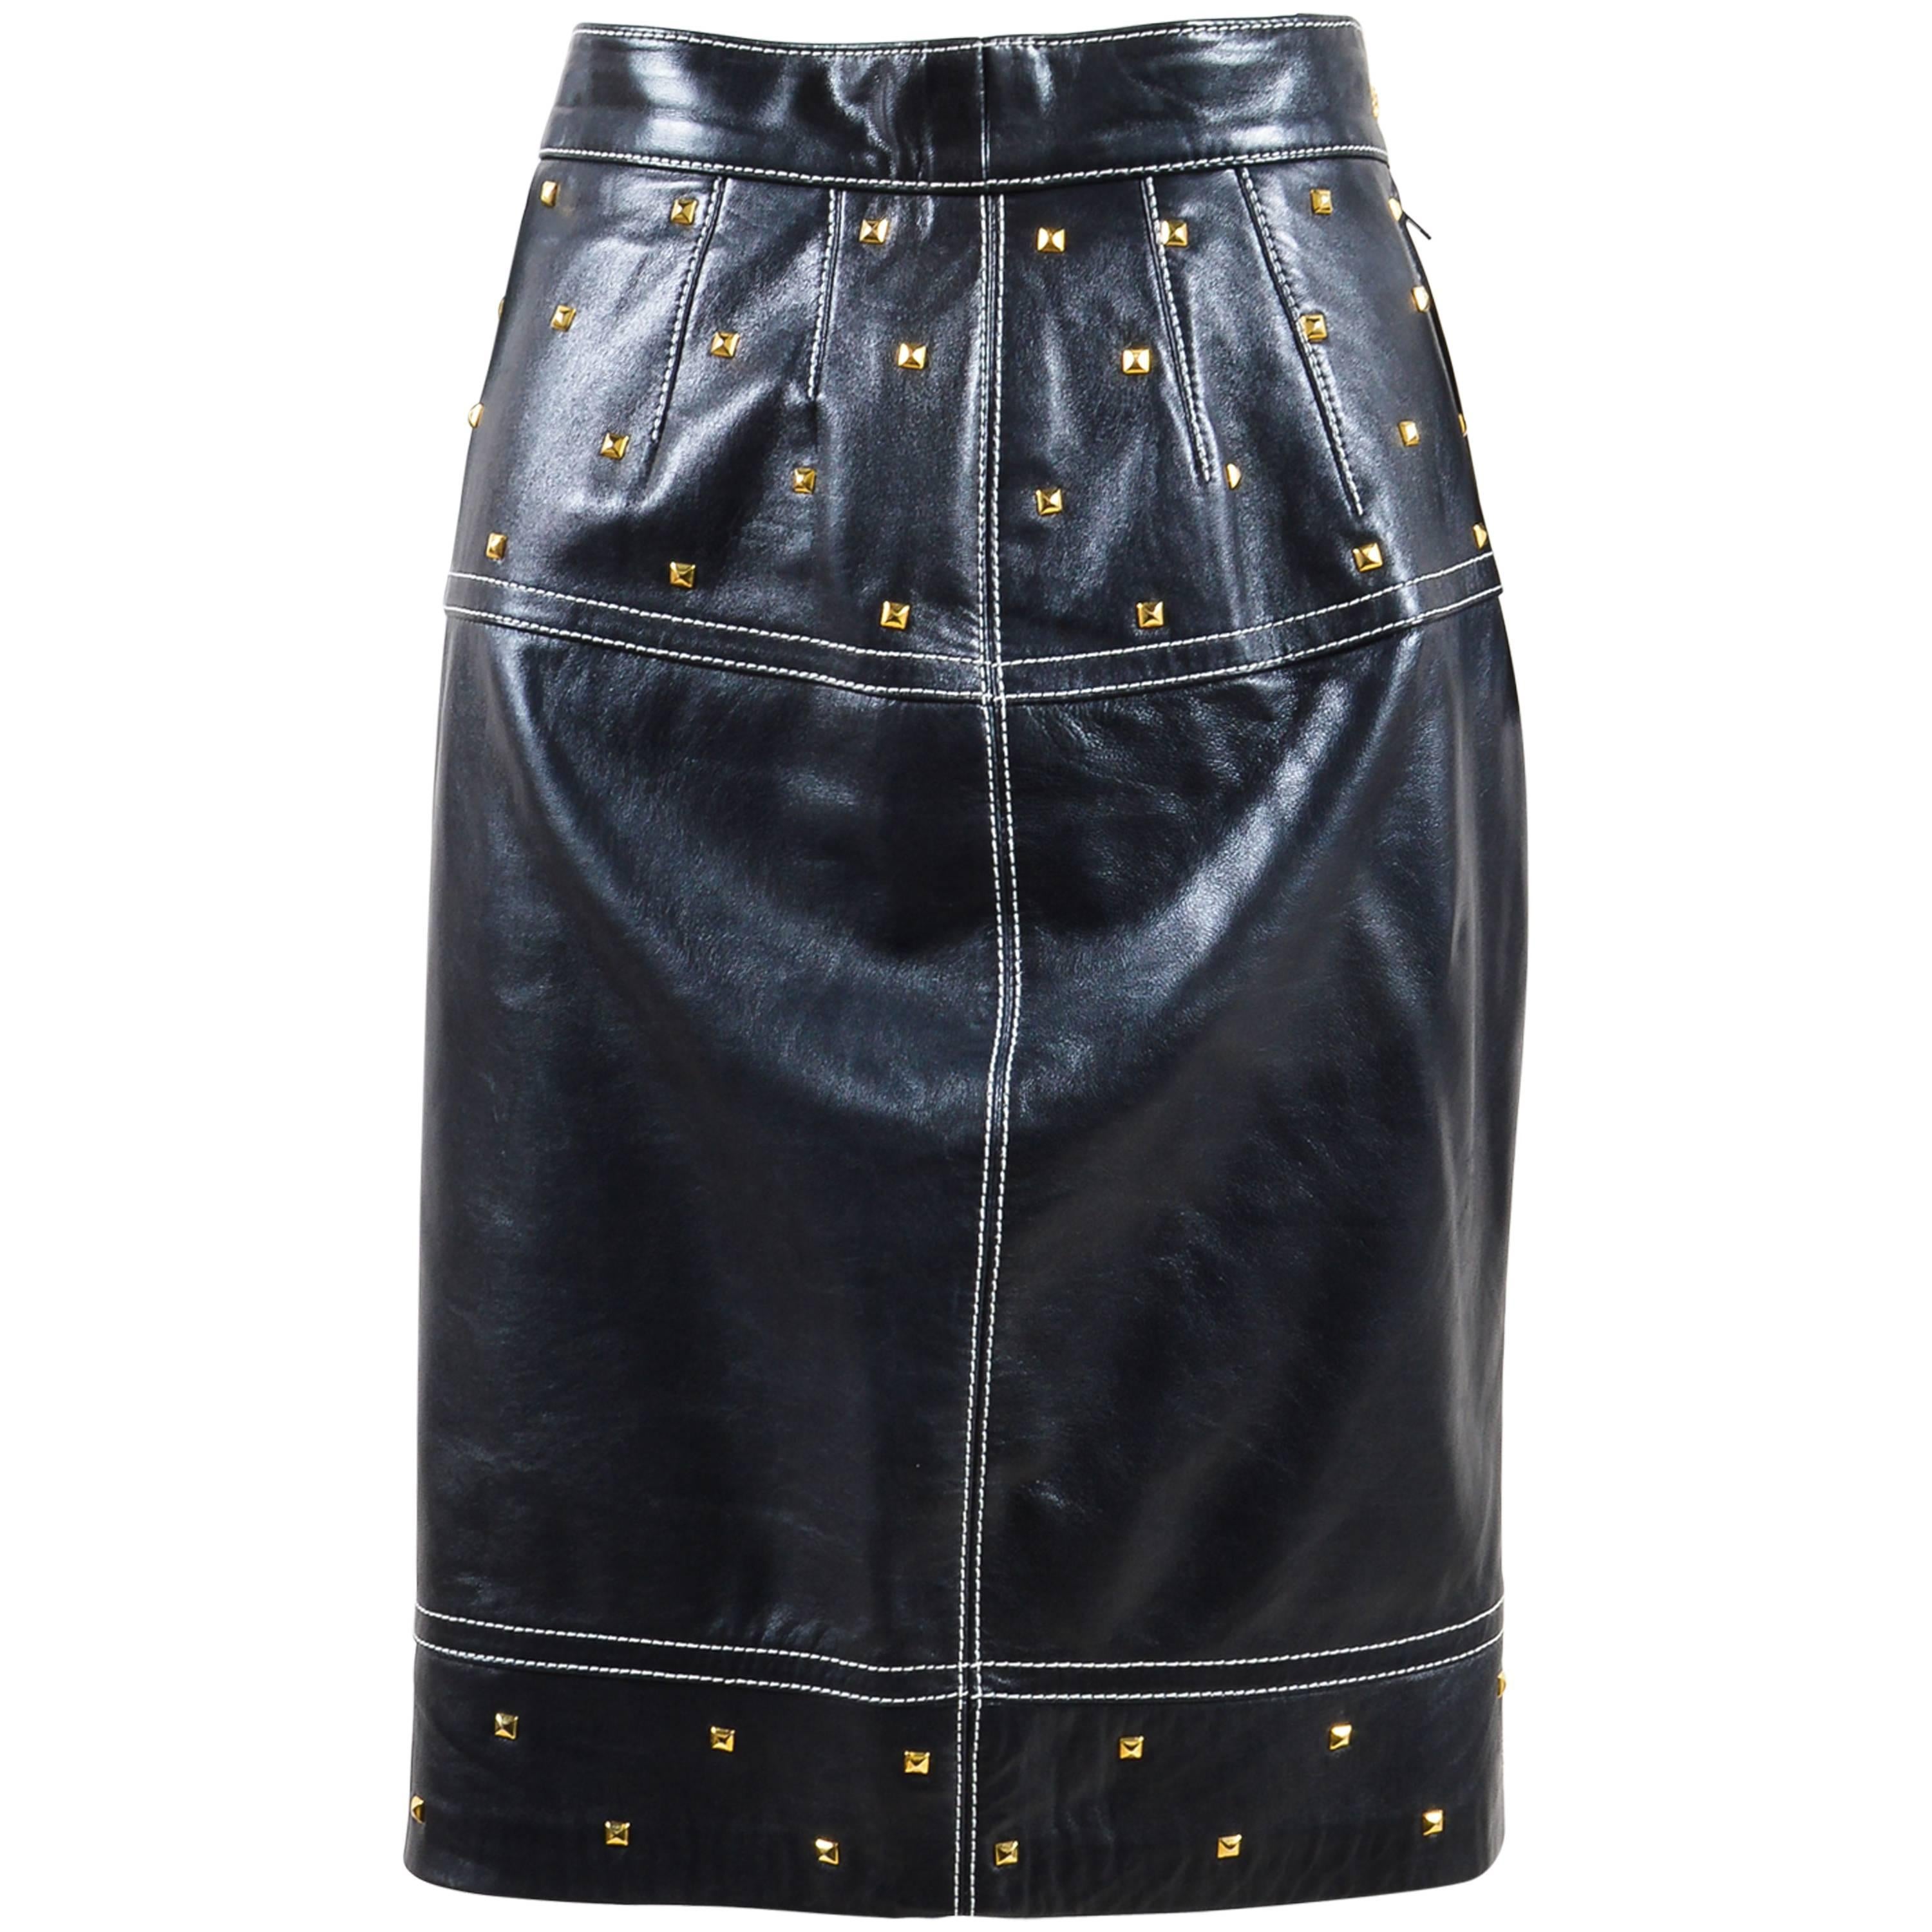 Vintage Escada Black Gold Tone Leather Studded Embellished Pencil Skirt Sz 34 For Sale